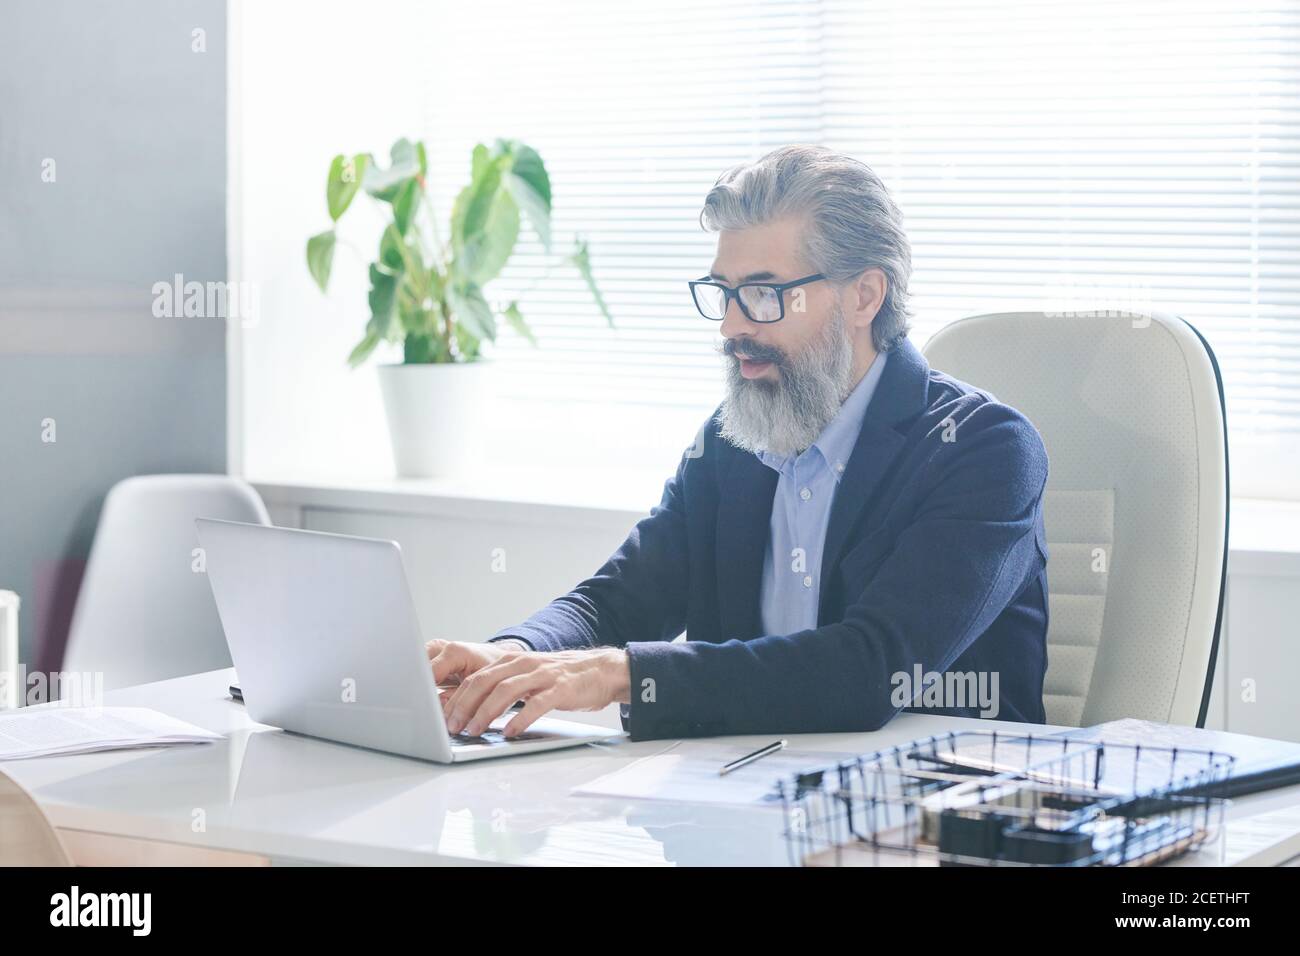 Retrato de un trabajador de oficina masculino maduro concentrado con gafas sentado en el escritorio de la oficina escribiendo algo en el ordenador portátil Foto de stock